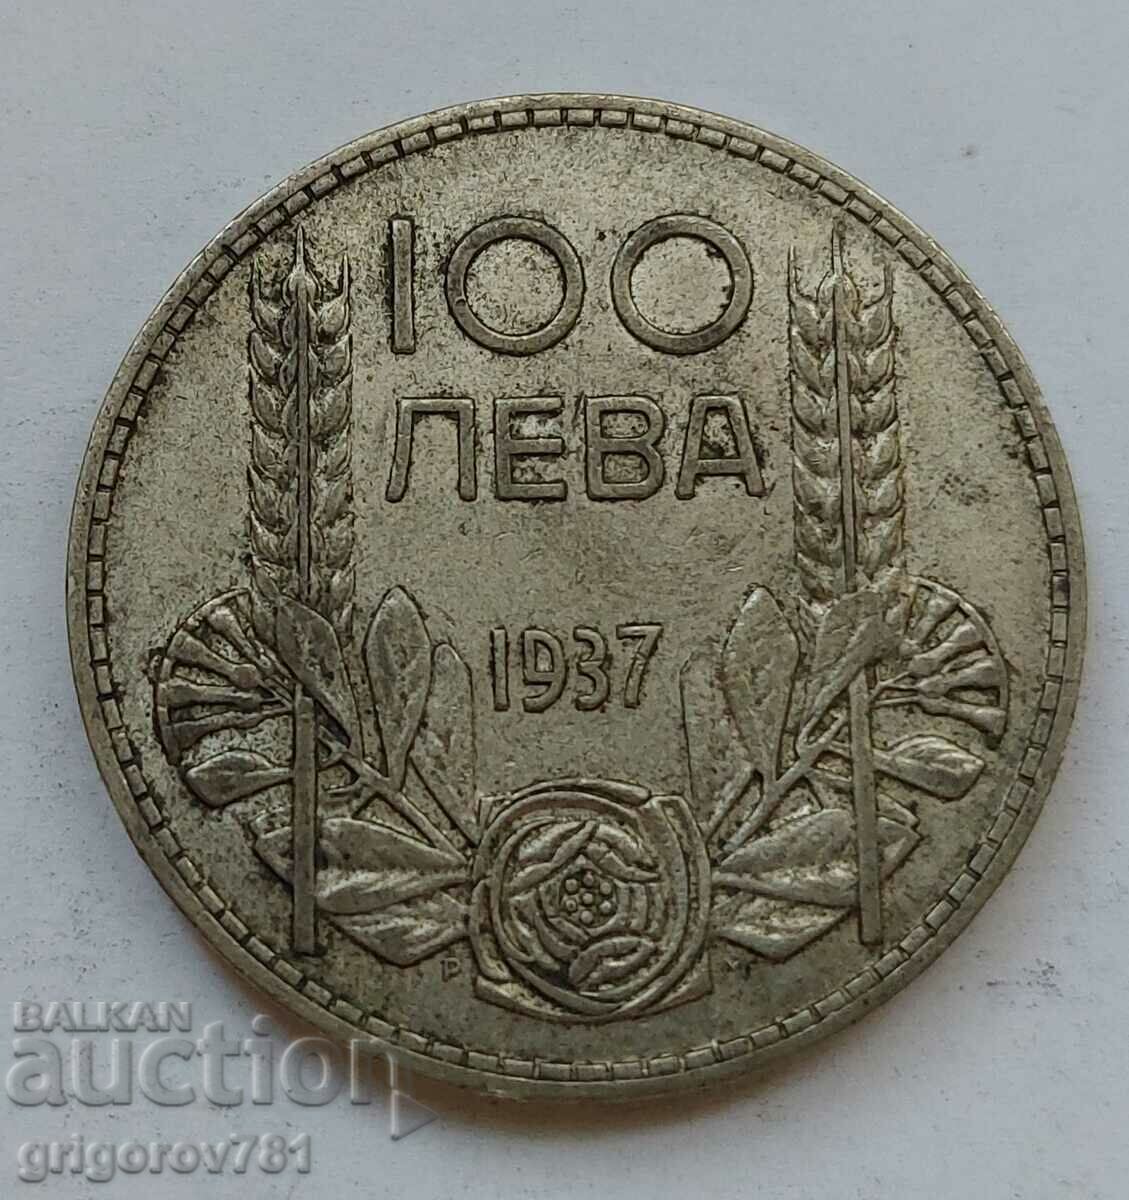 100 leva silver Bulgaria 1937 - silver coin #150